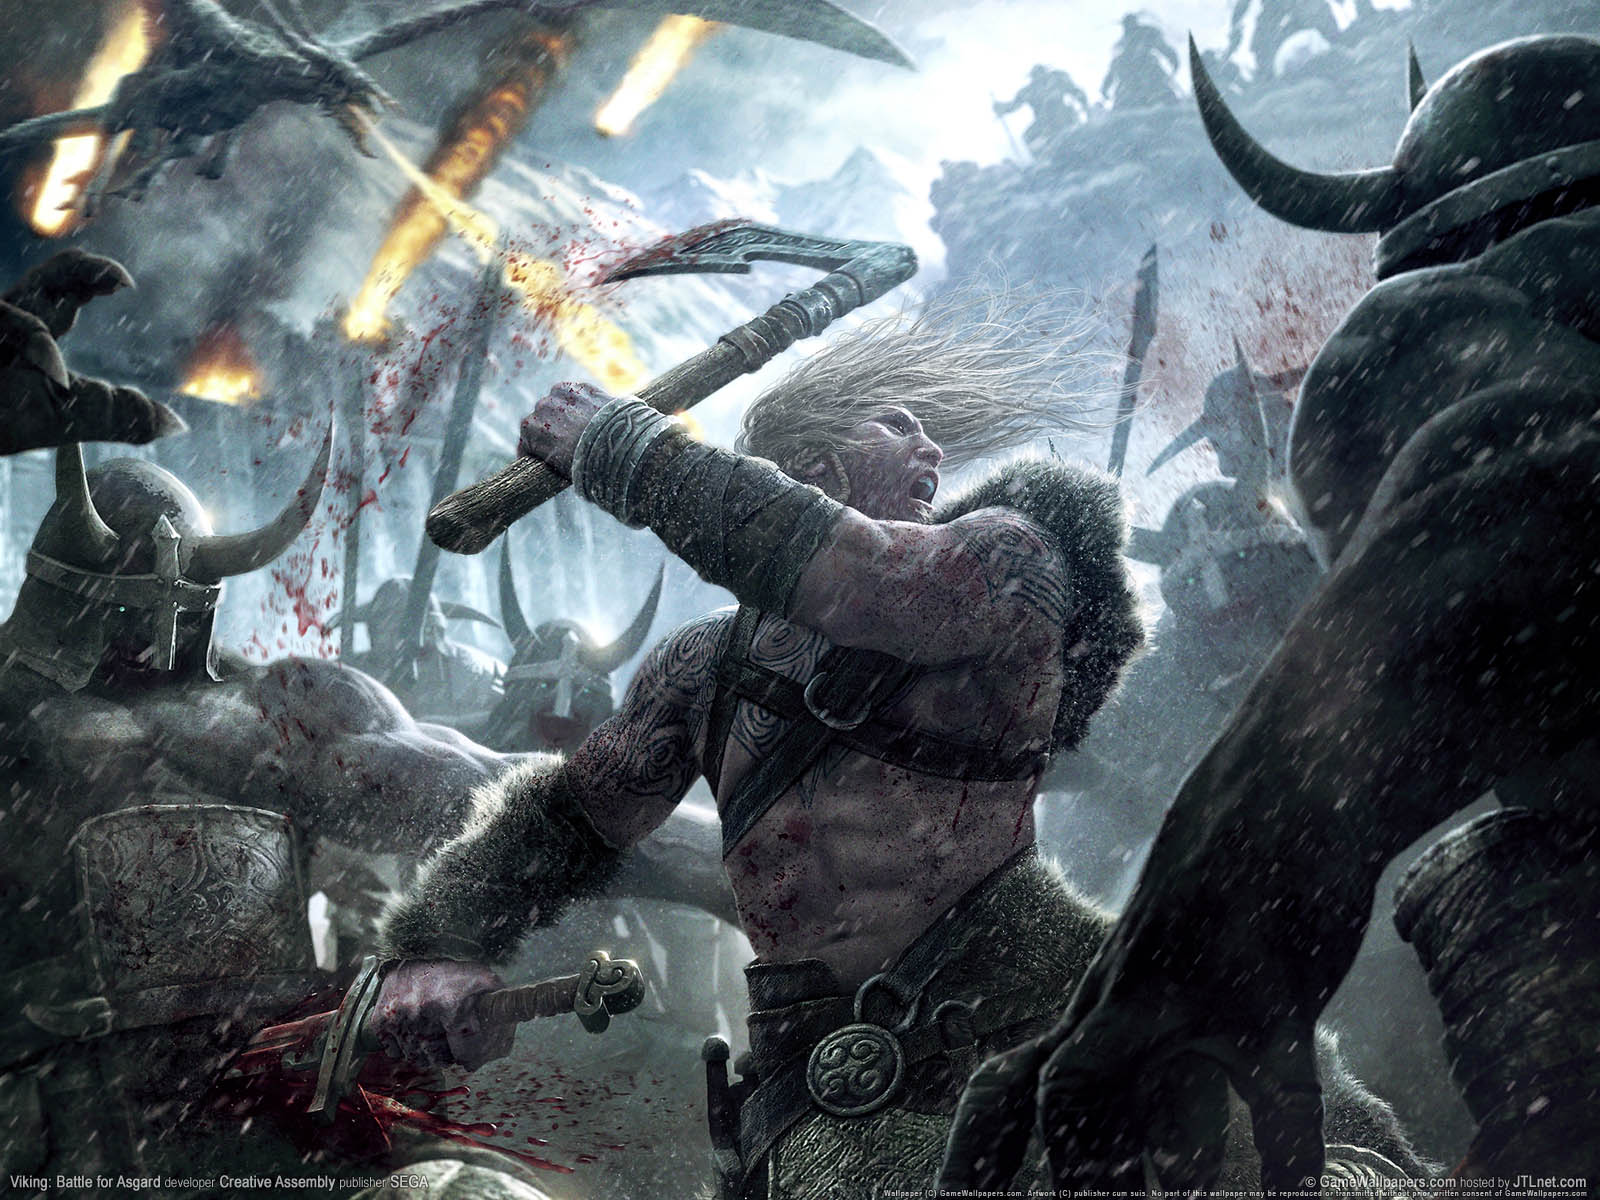 Viking%3A Battle for Asgard fond d'cran 01 1600x1200